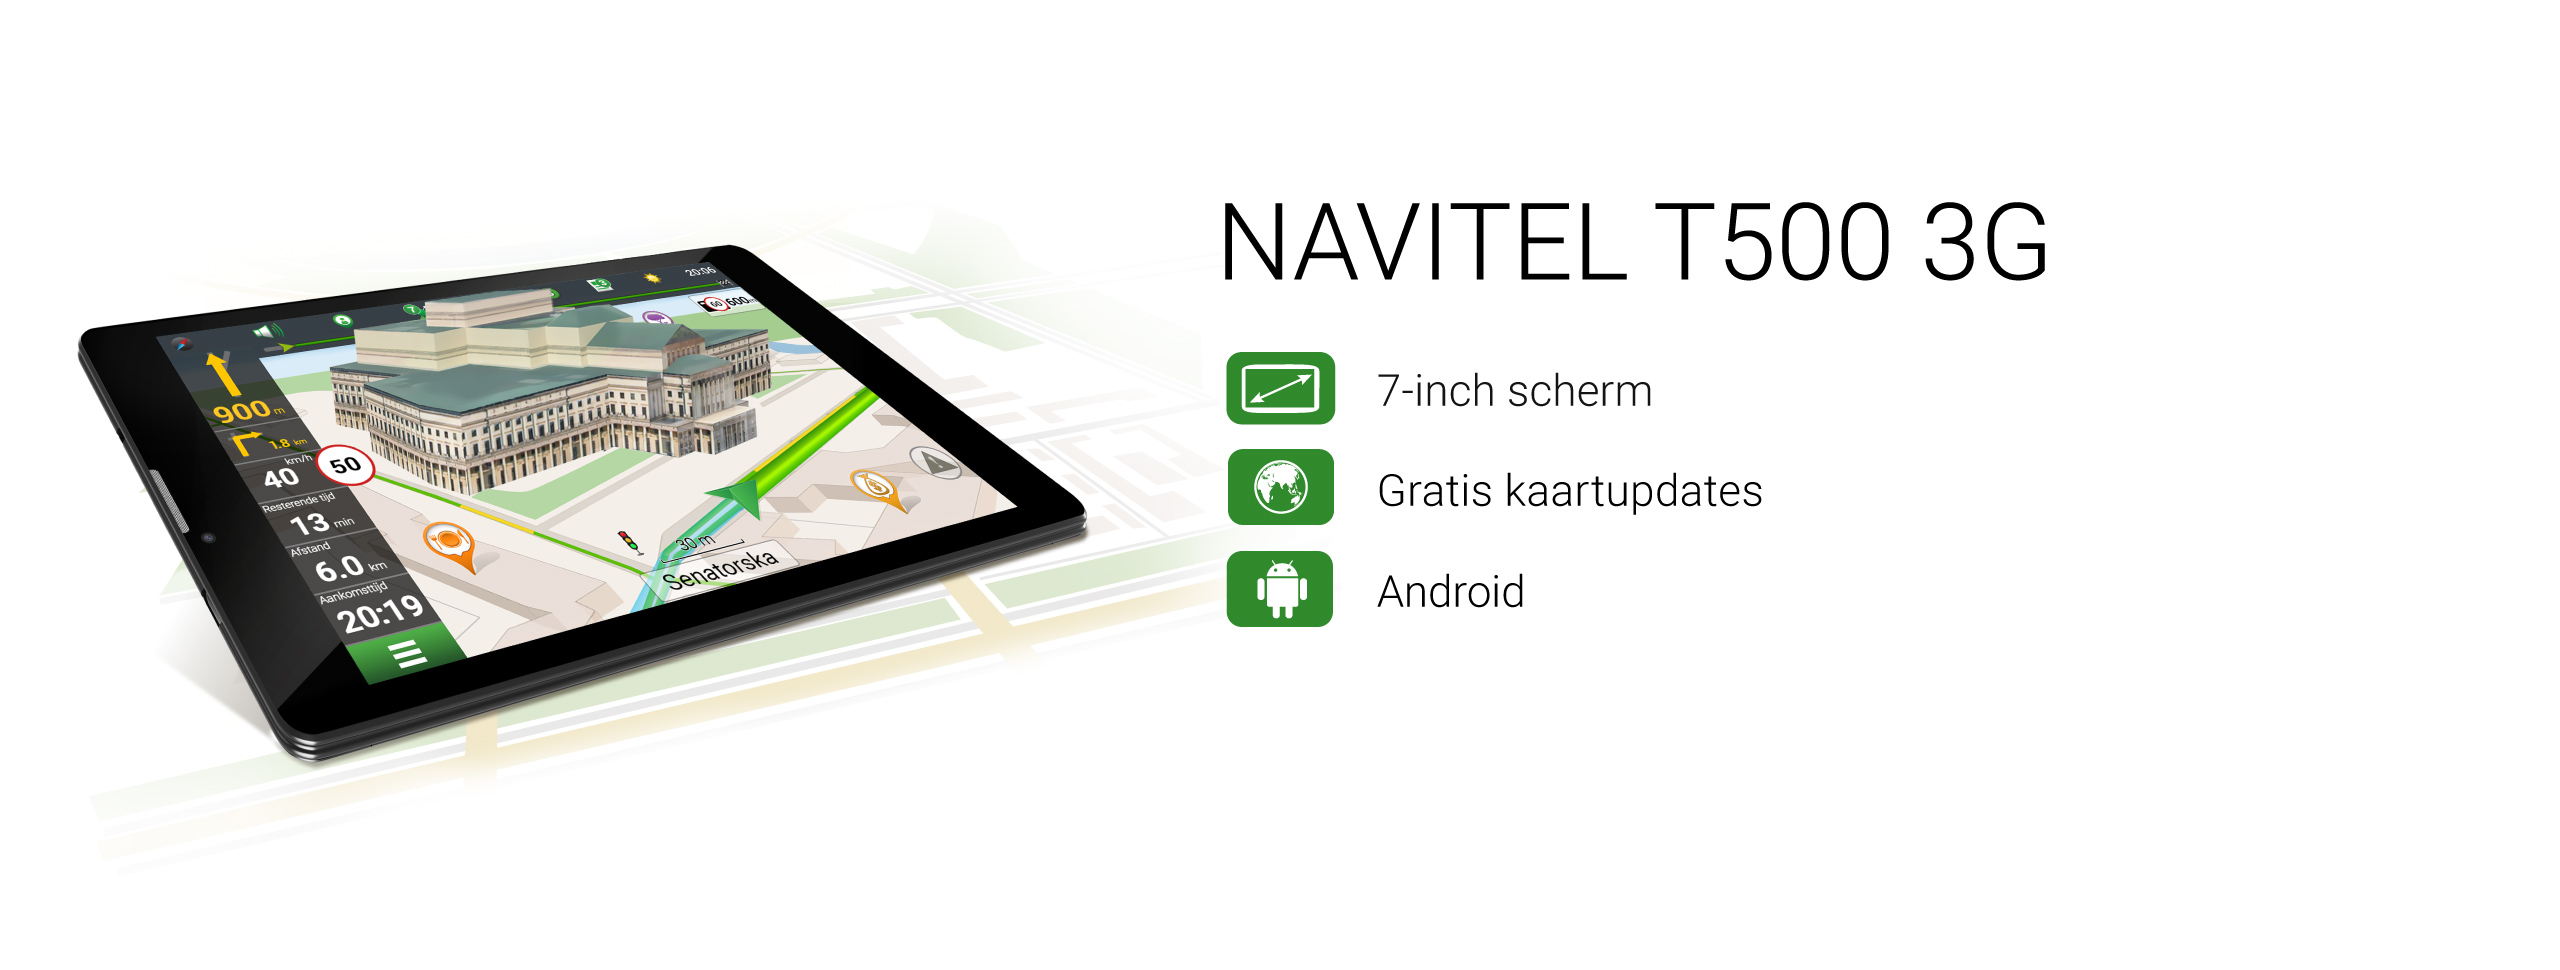 NAVITEL T500 3G-tablet